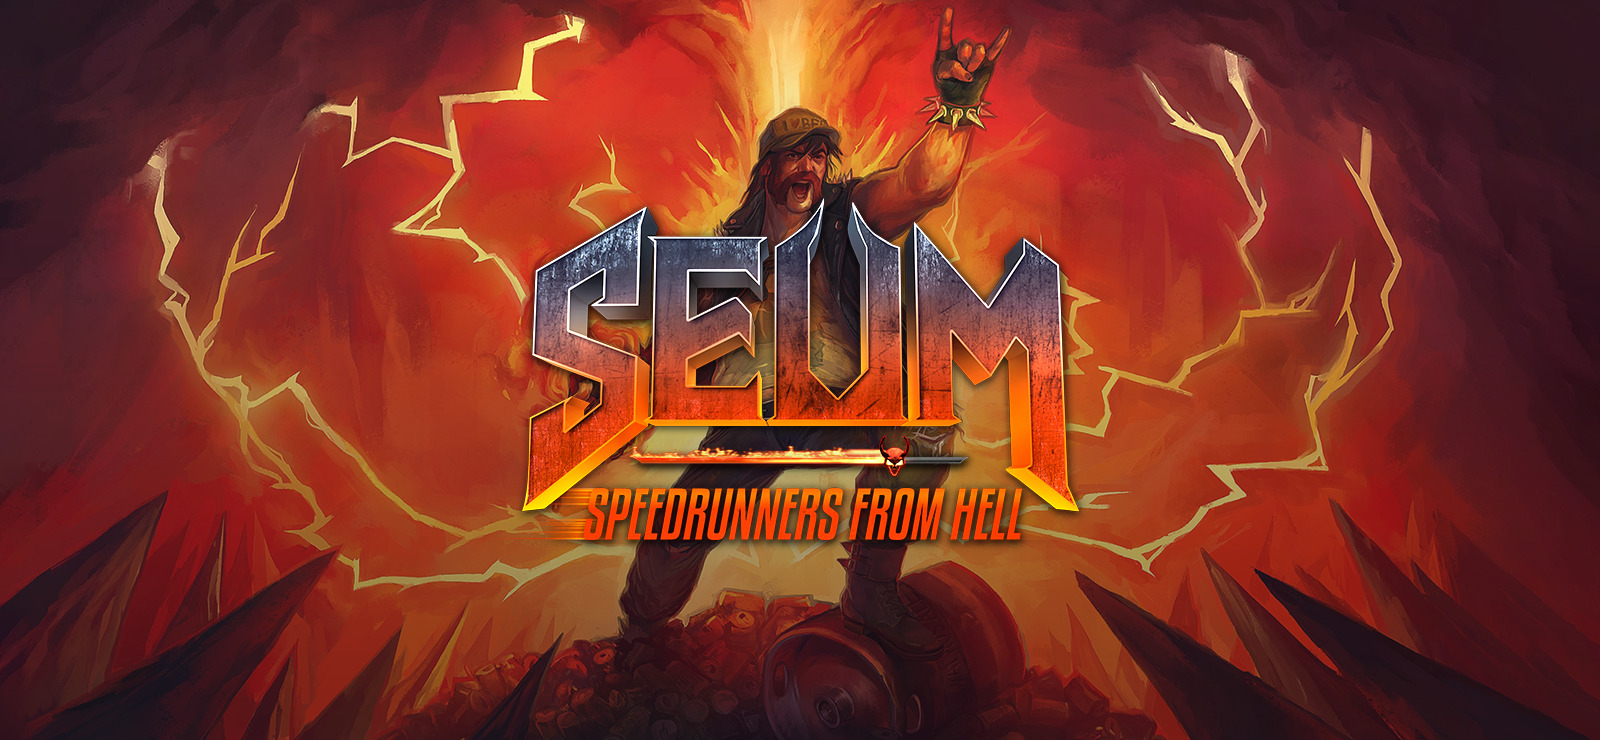 67% SEUM: Speedrunners from Hell on